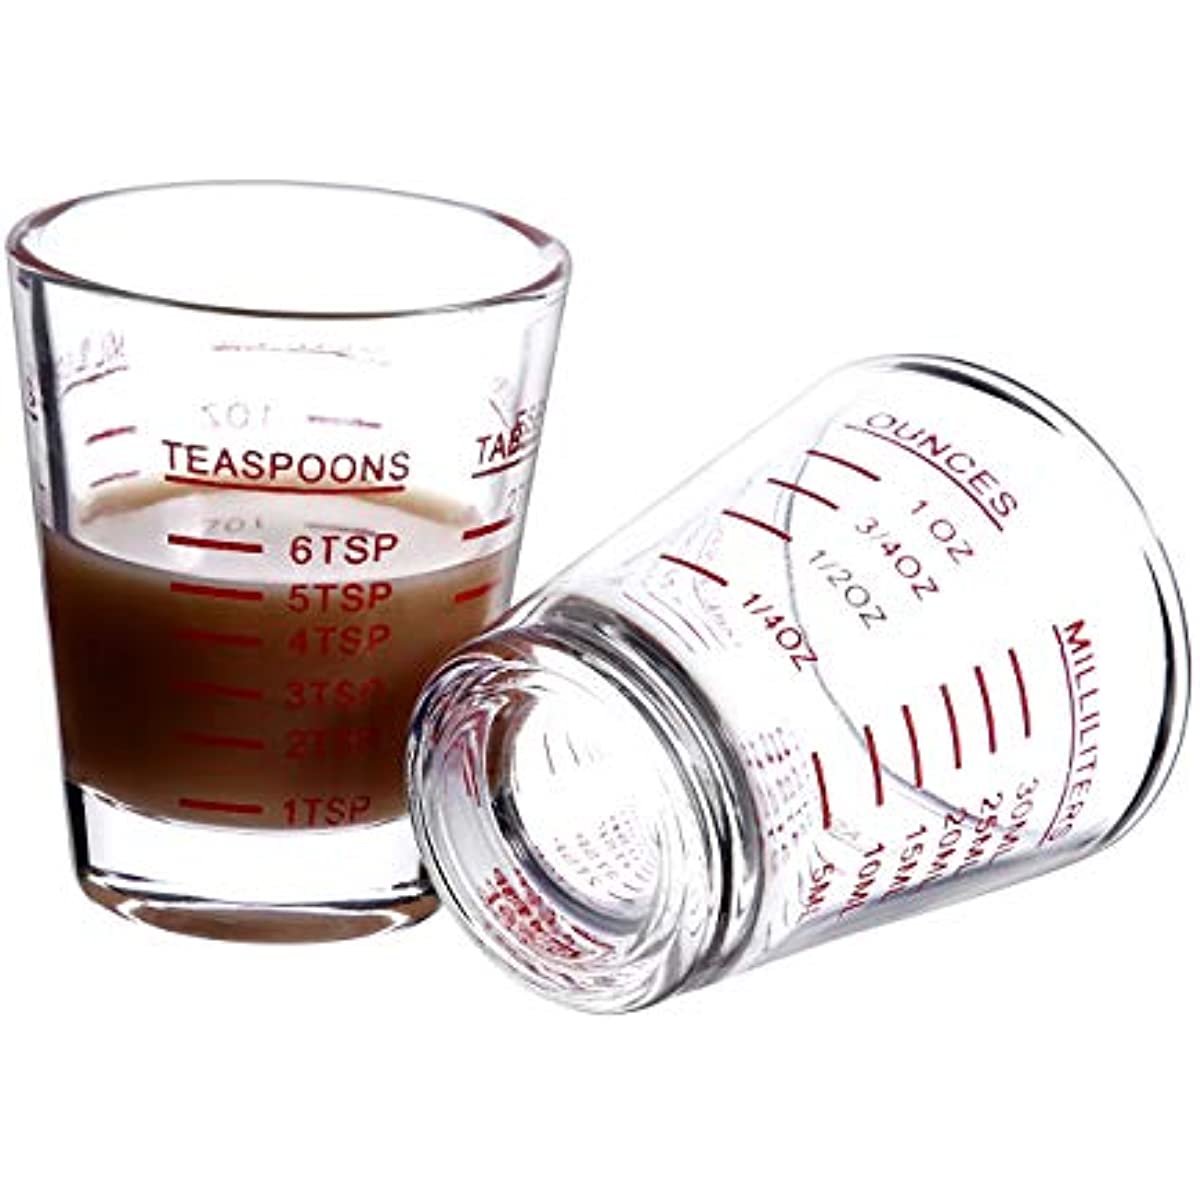 Clear Glass Espresso Liquid Glass Measuring Cup Glass Heavy Square